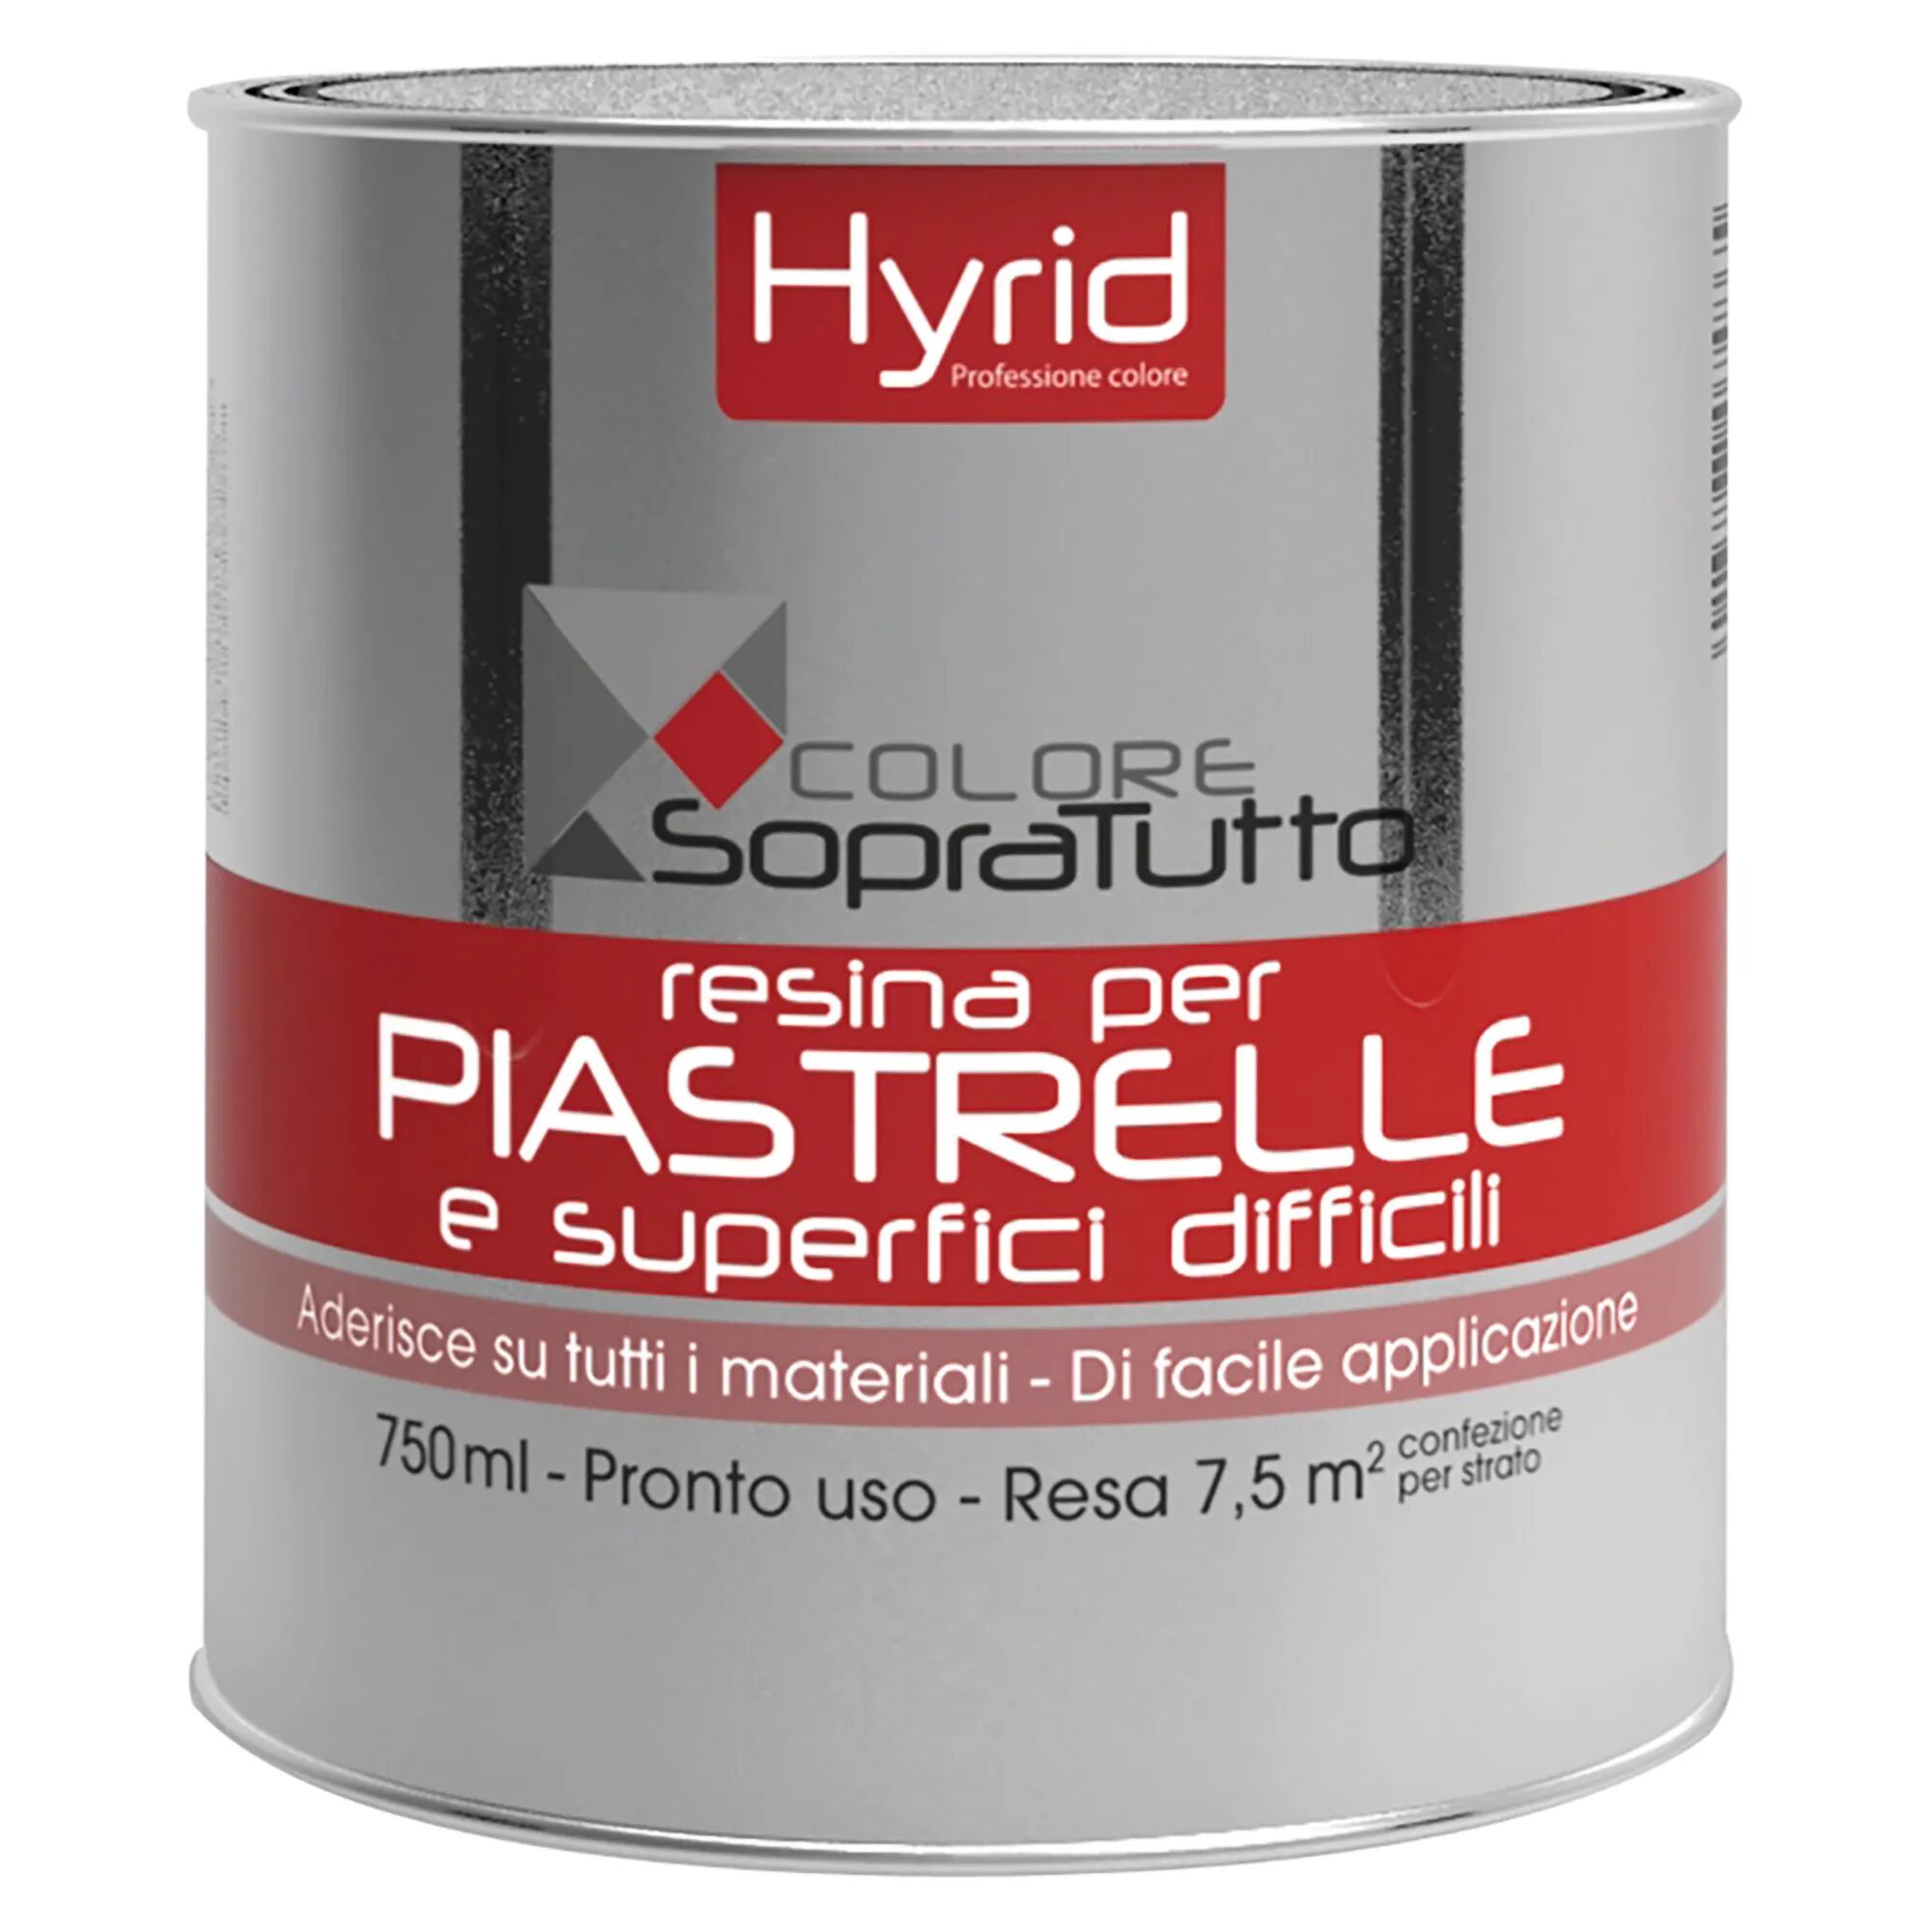 Hyrid By Covema RESINA PIASTRELLE HYRID GERMOGLIO 750 ml PER SUPERFICI DIFFICILI 10 m²  CON 1 l PRONTO USO